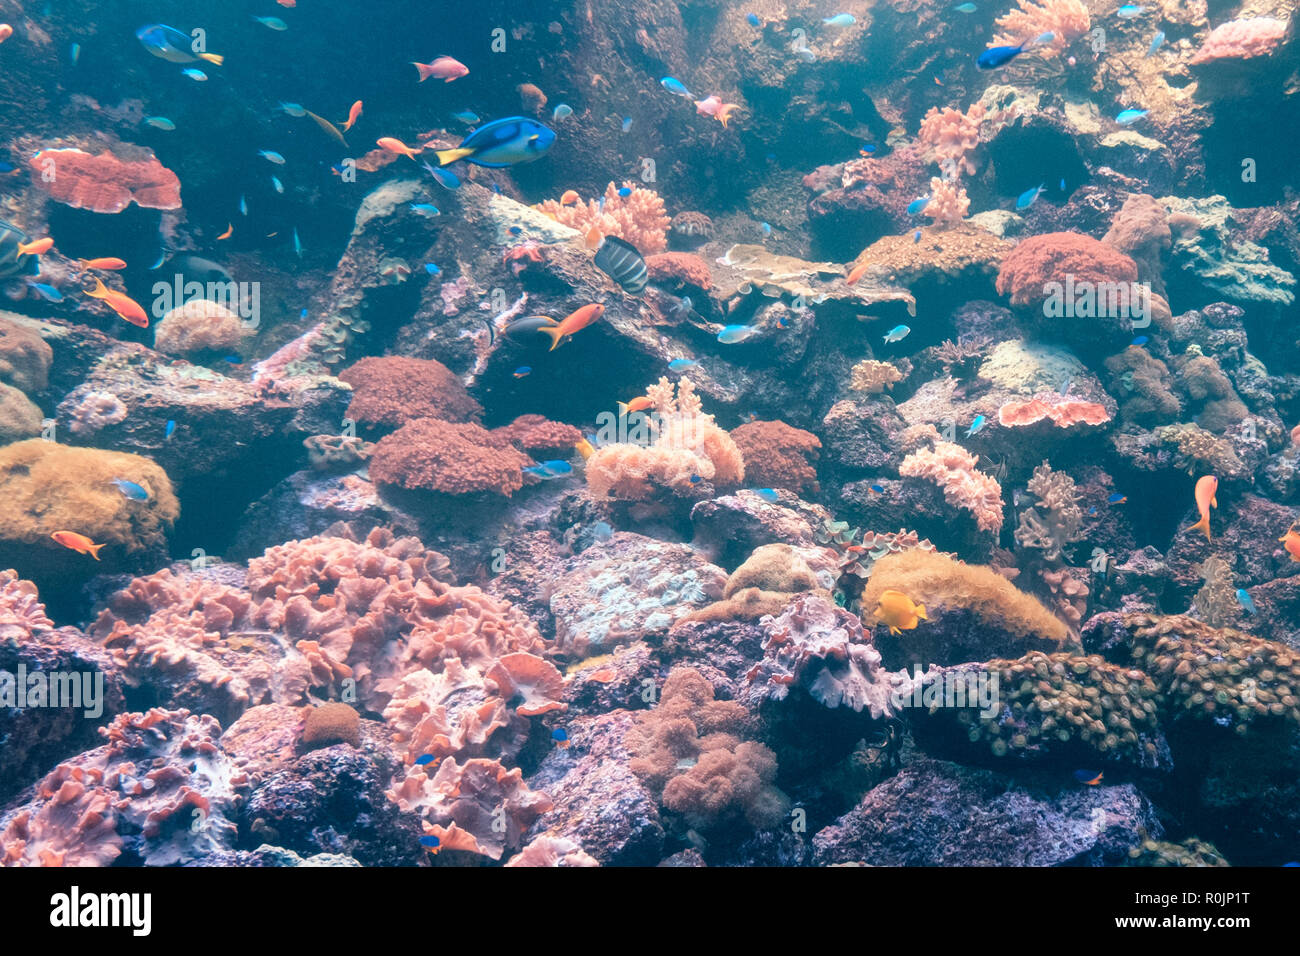 Los peces y corales, coloridos arrecifes subacuática sealife Foto de stock